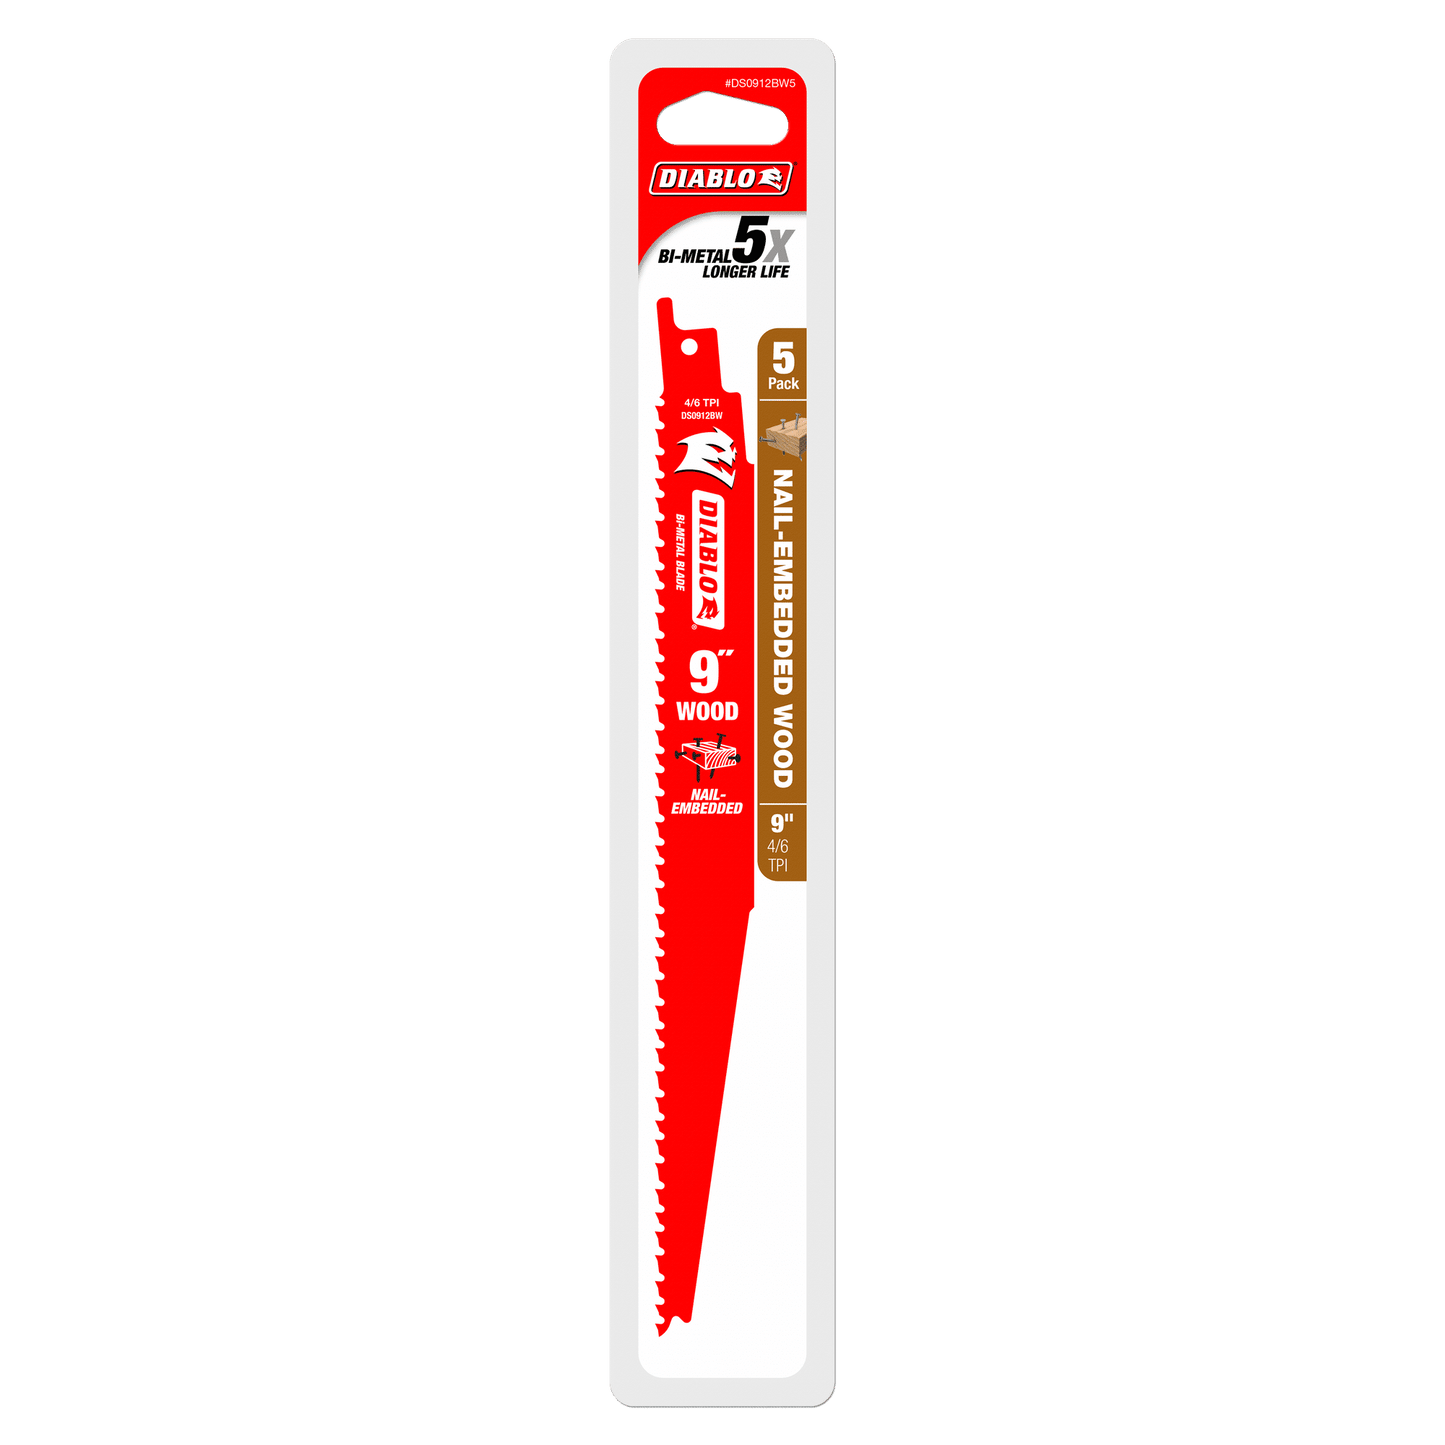 Bi-Metal Recip Blade for Nail Embedded Wood (5-Pack)